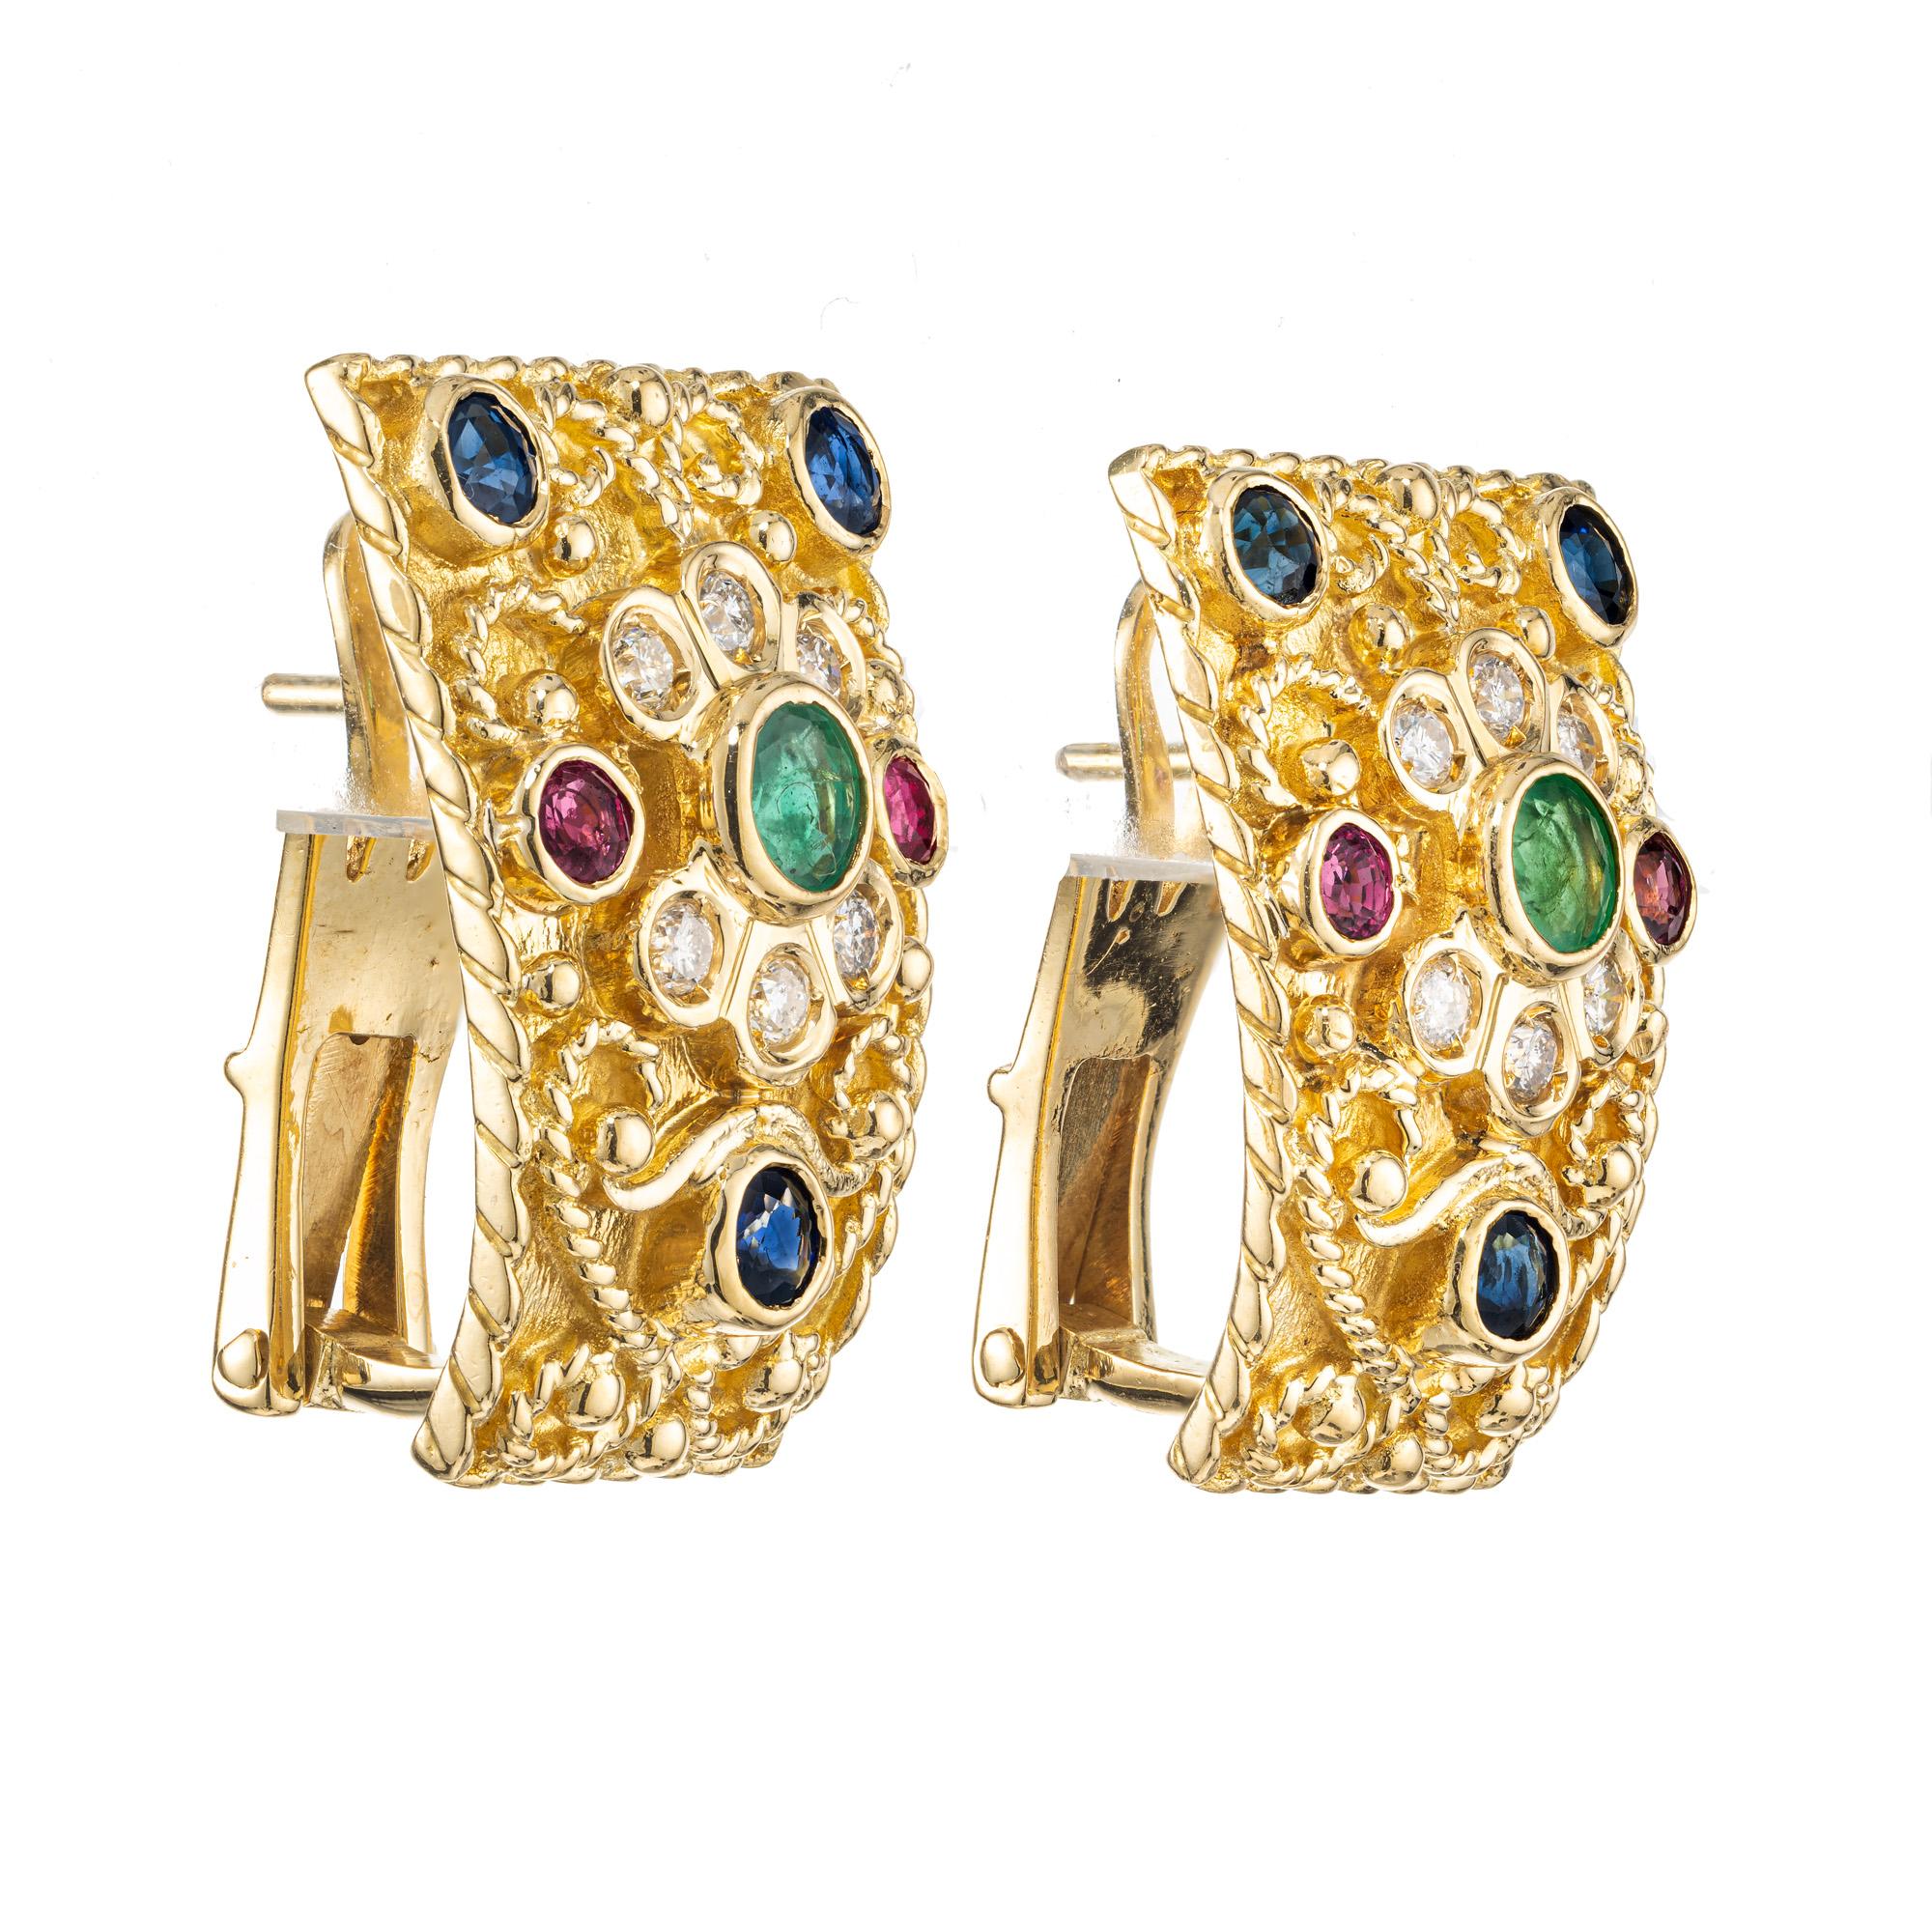 Edelstein-Ohrringe im byzantinischen Stil mit mehreren Steinen. Diese handgefertigten, wunderschön strukturierten und hochdetaillierten Clip-Post-Ohrringe aus 18 Karat Gelbgold sind mit zwei runden Smaragden, 6 runden Saphiren, 4 runden Rubinen, 2